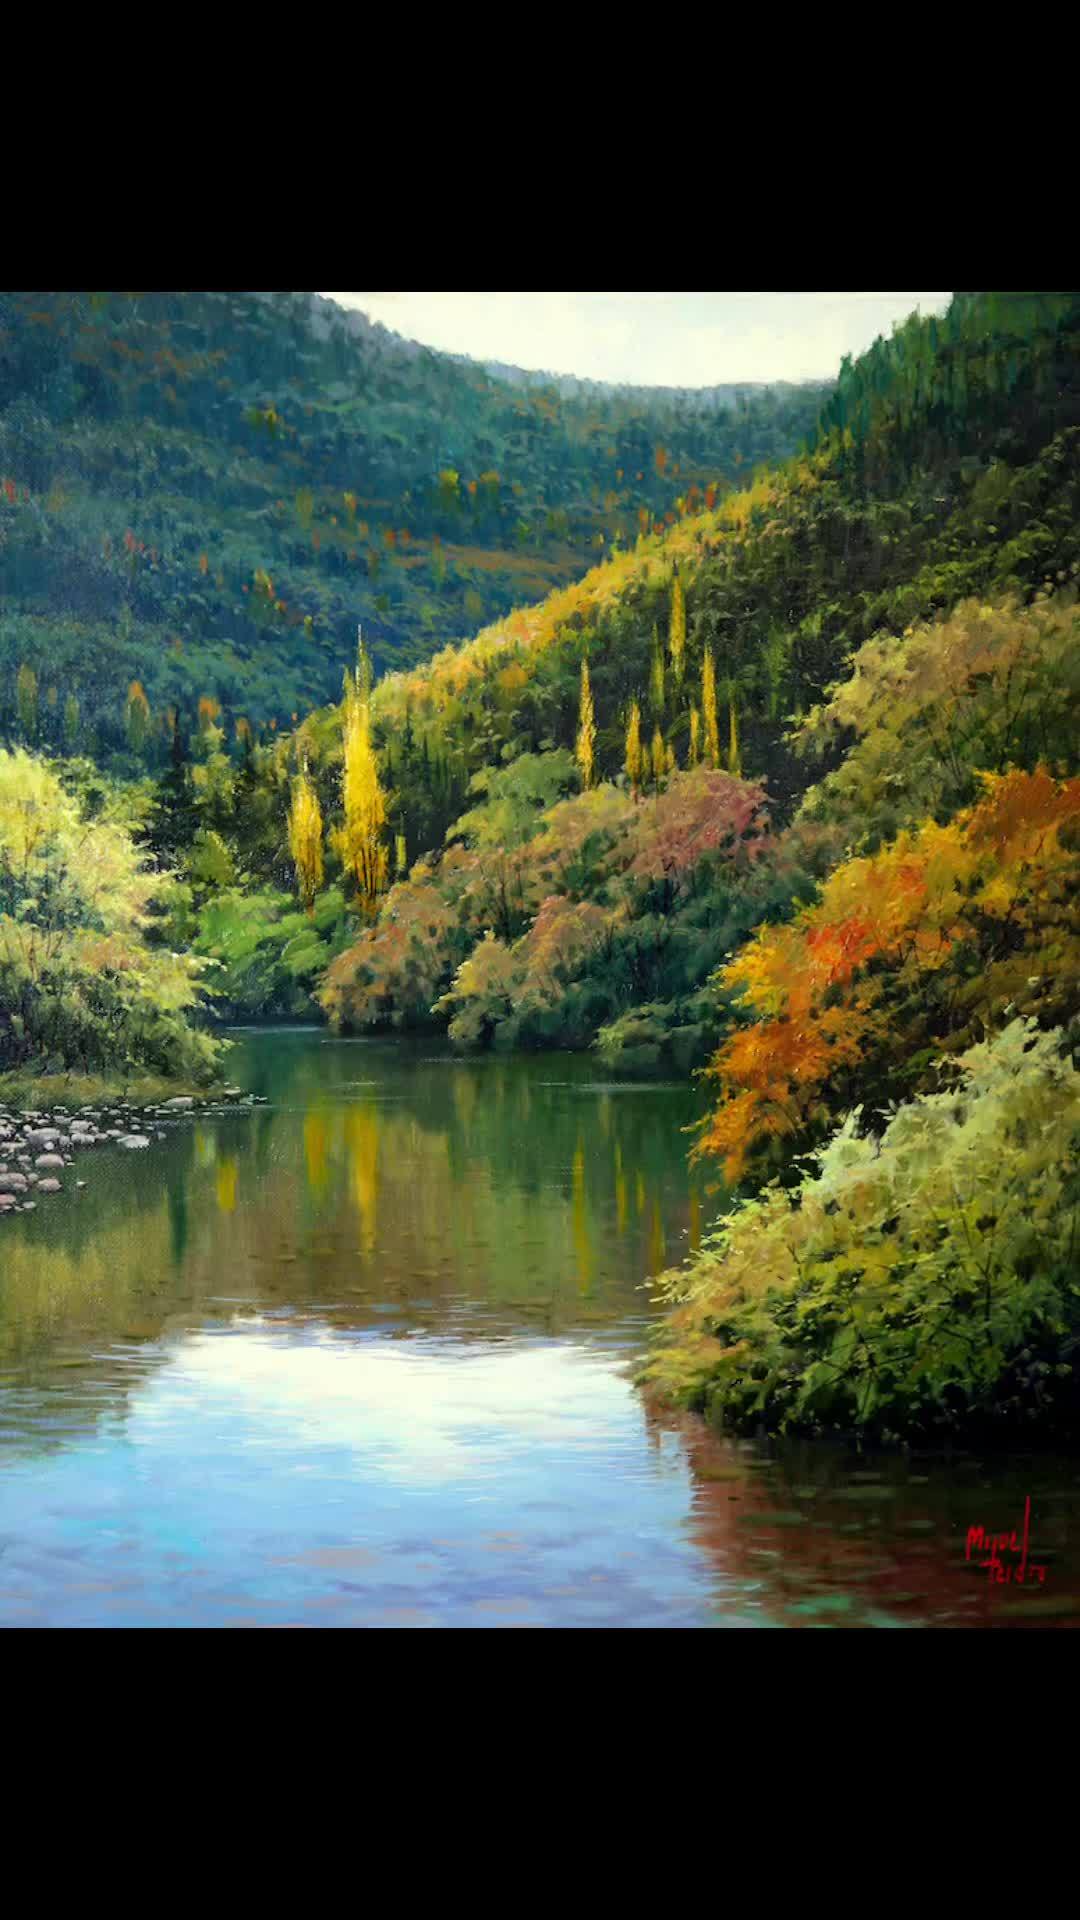 西班牙画家米格尔·佩德罗笔下的风景油画太美了,我愿在这样的风景里